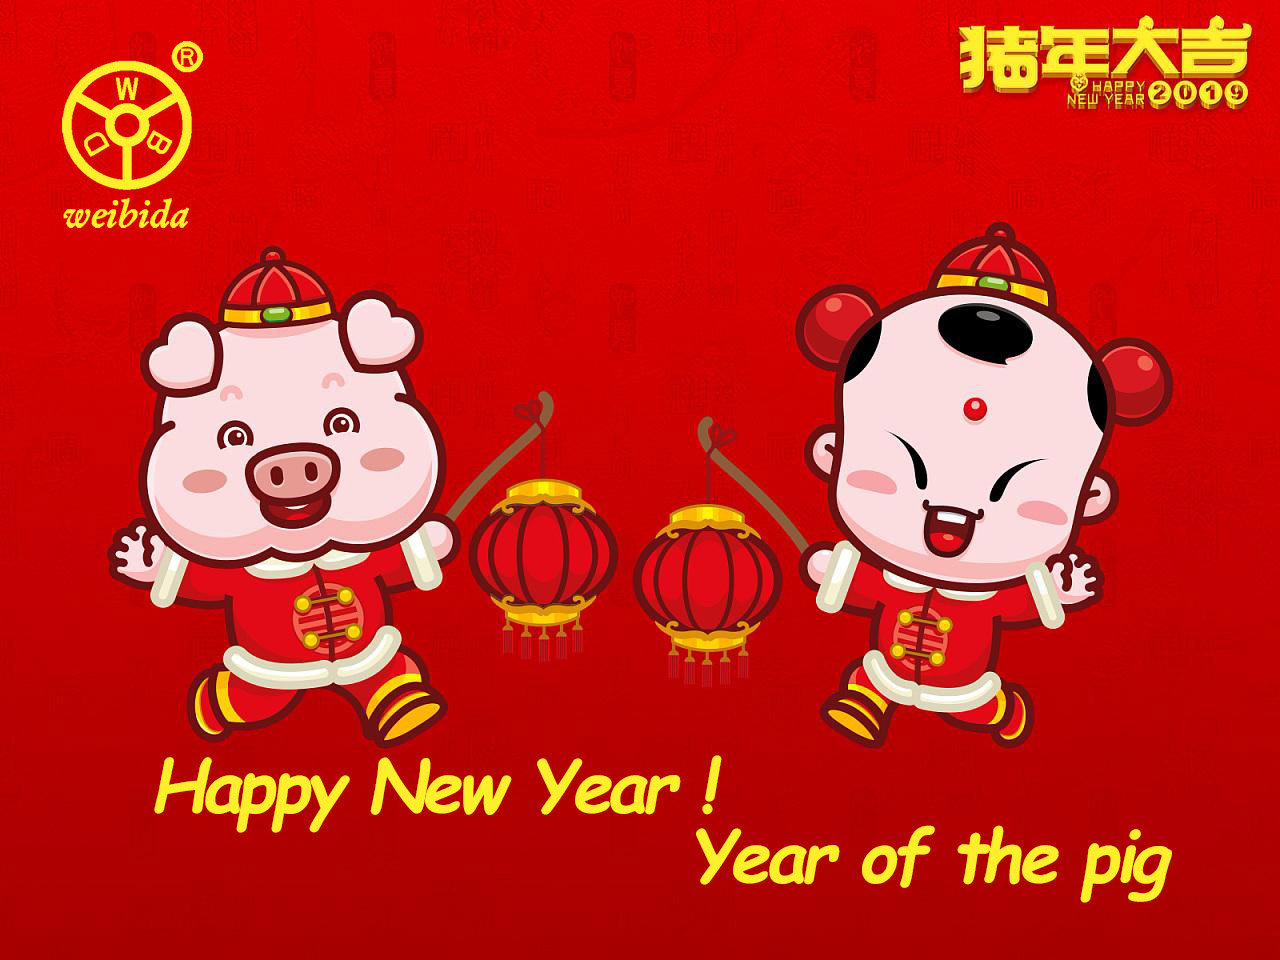 El año nuevo chino está llegando